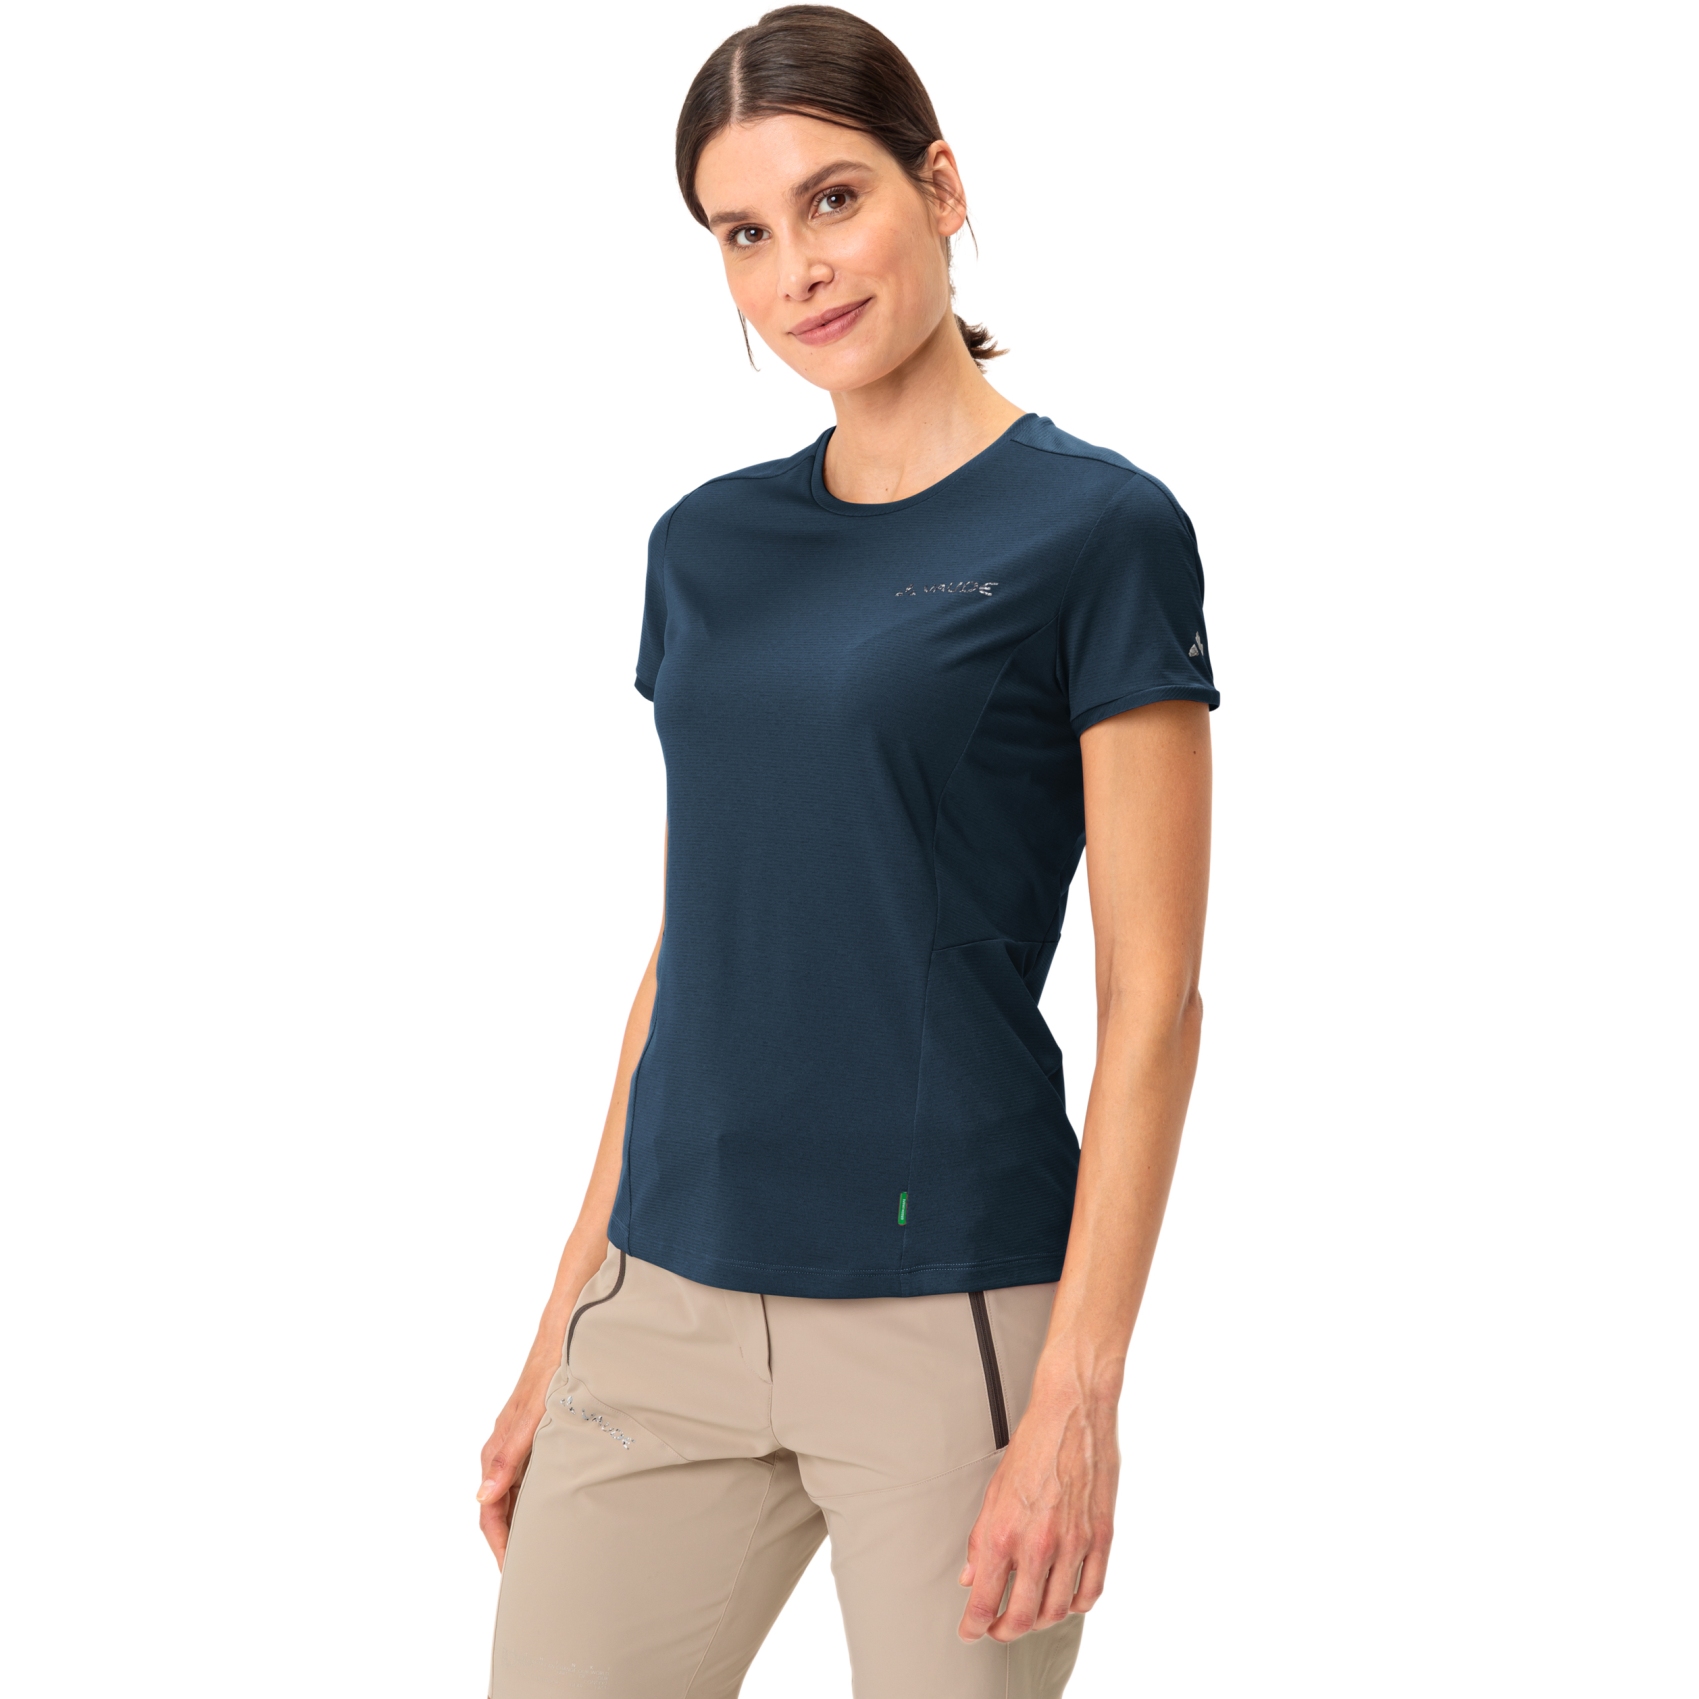 Produktbild von Vaude Elope T-Shirt Damen - dark sea